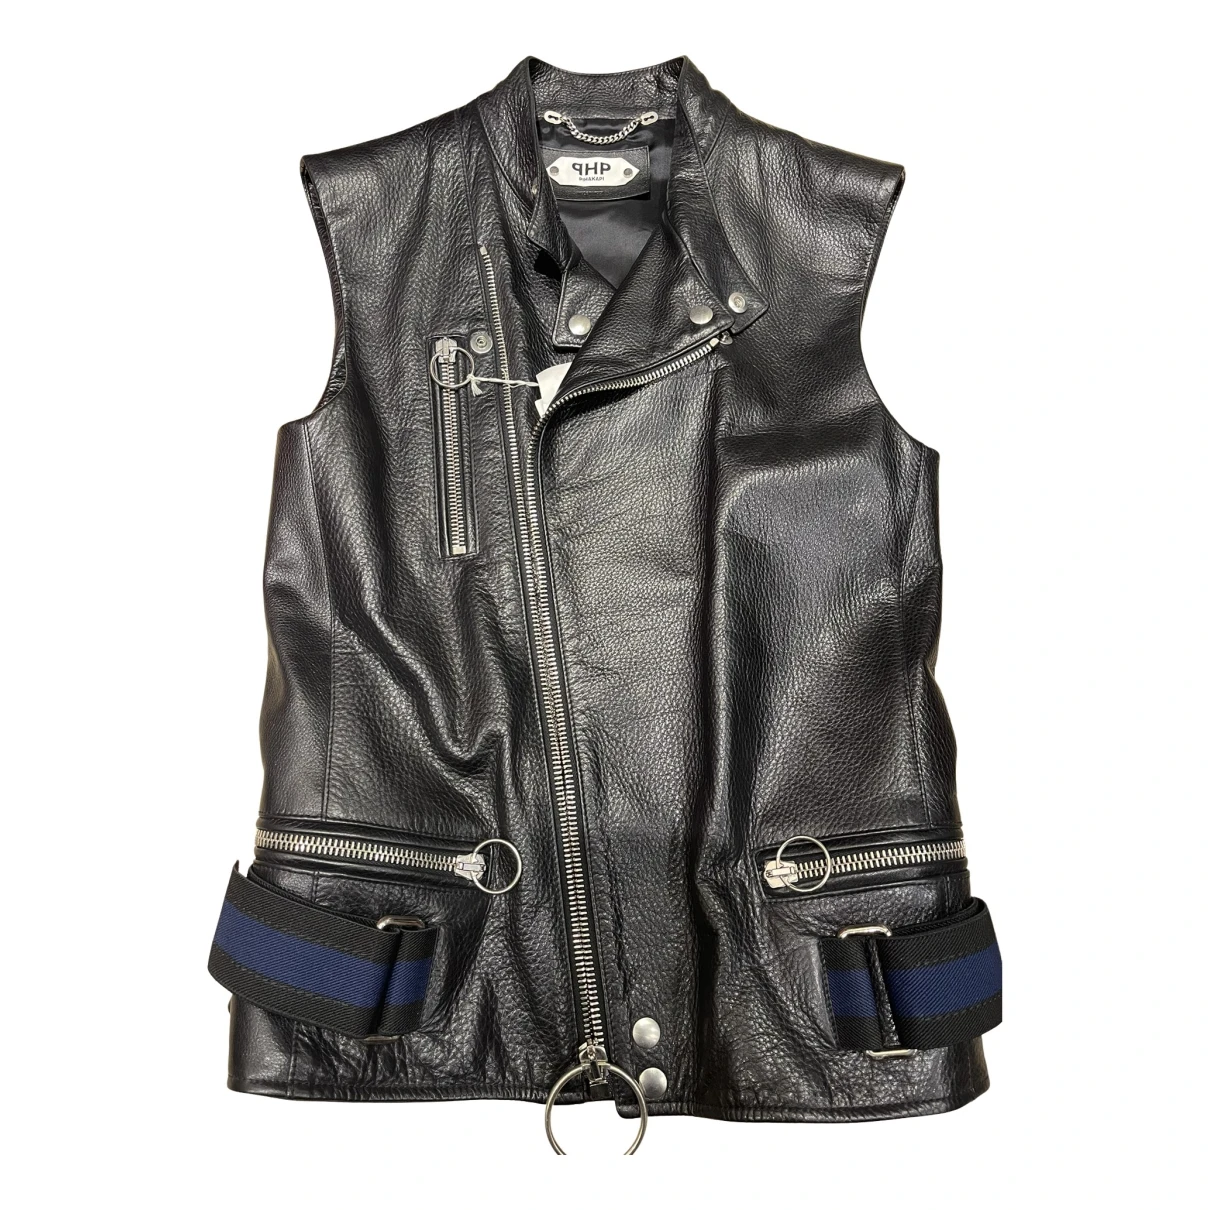 clothing Pihakapi jackets for Female Leather S International. Used condition